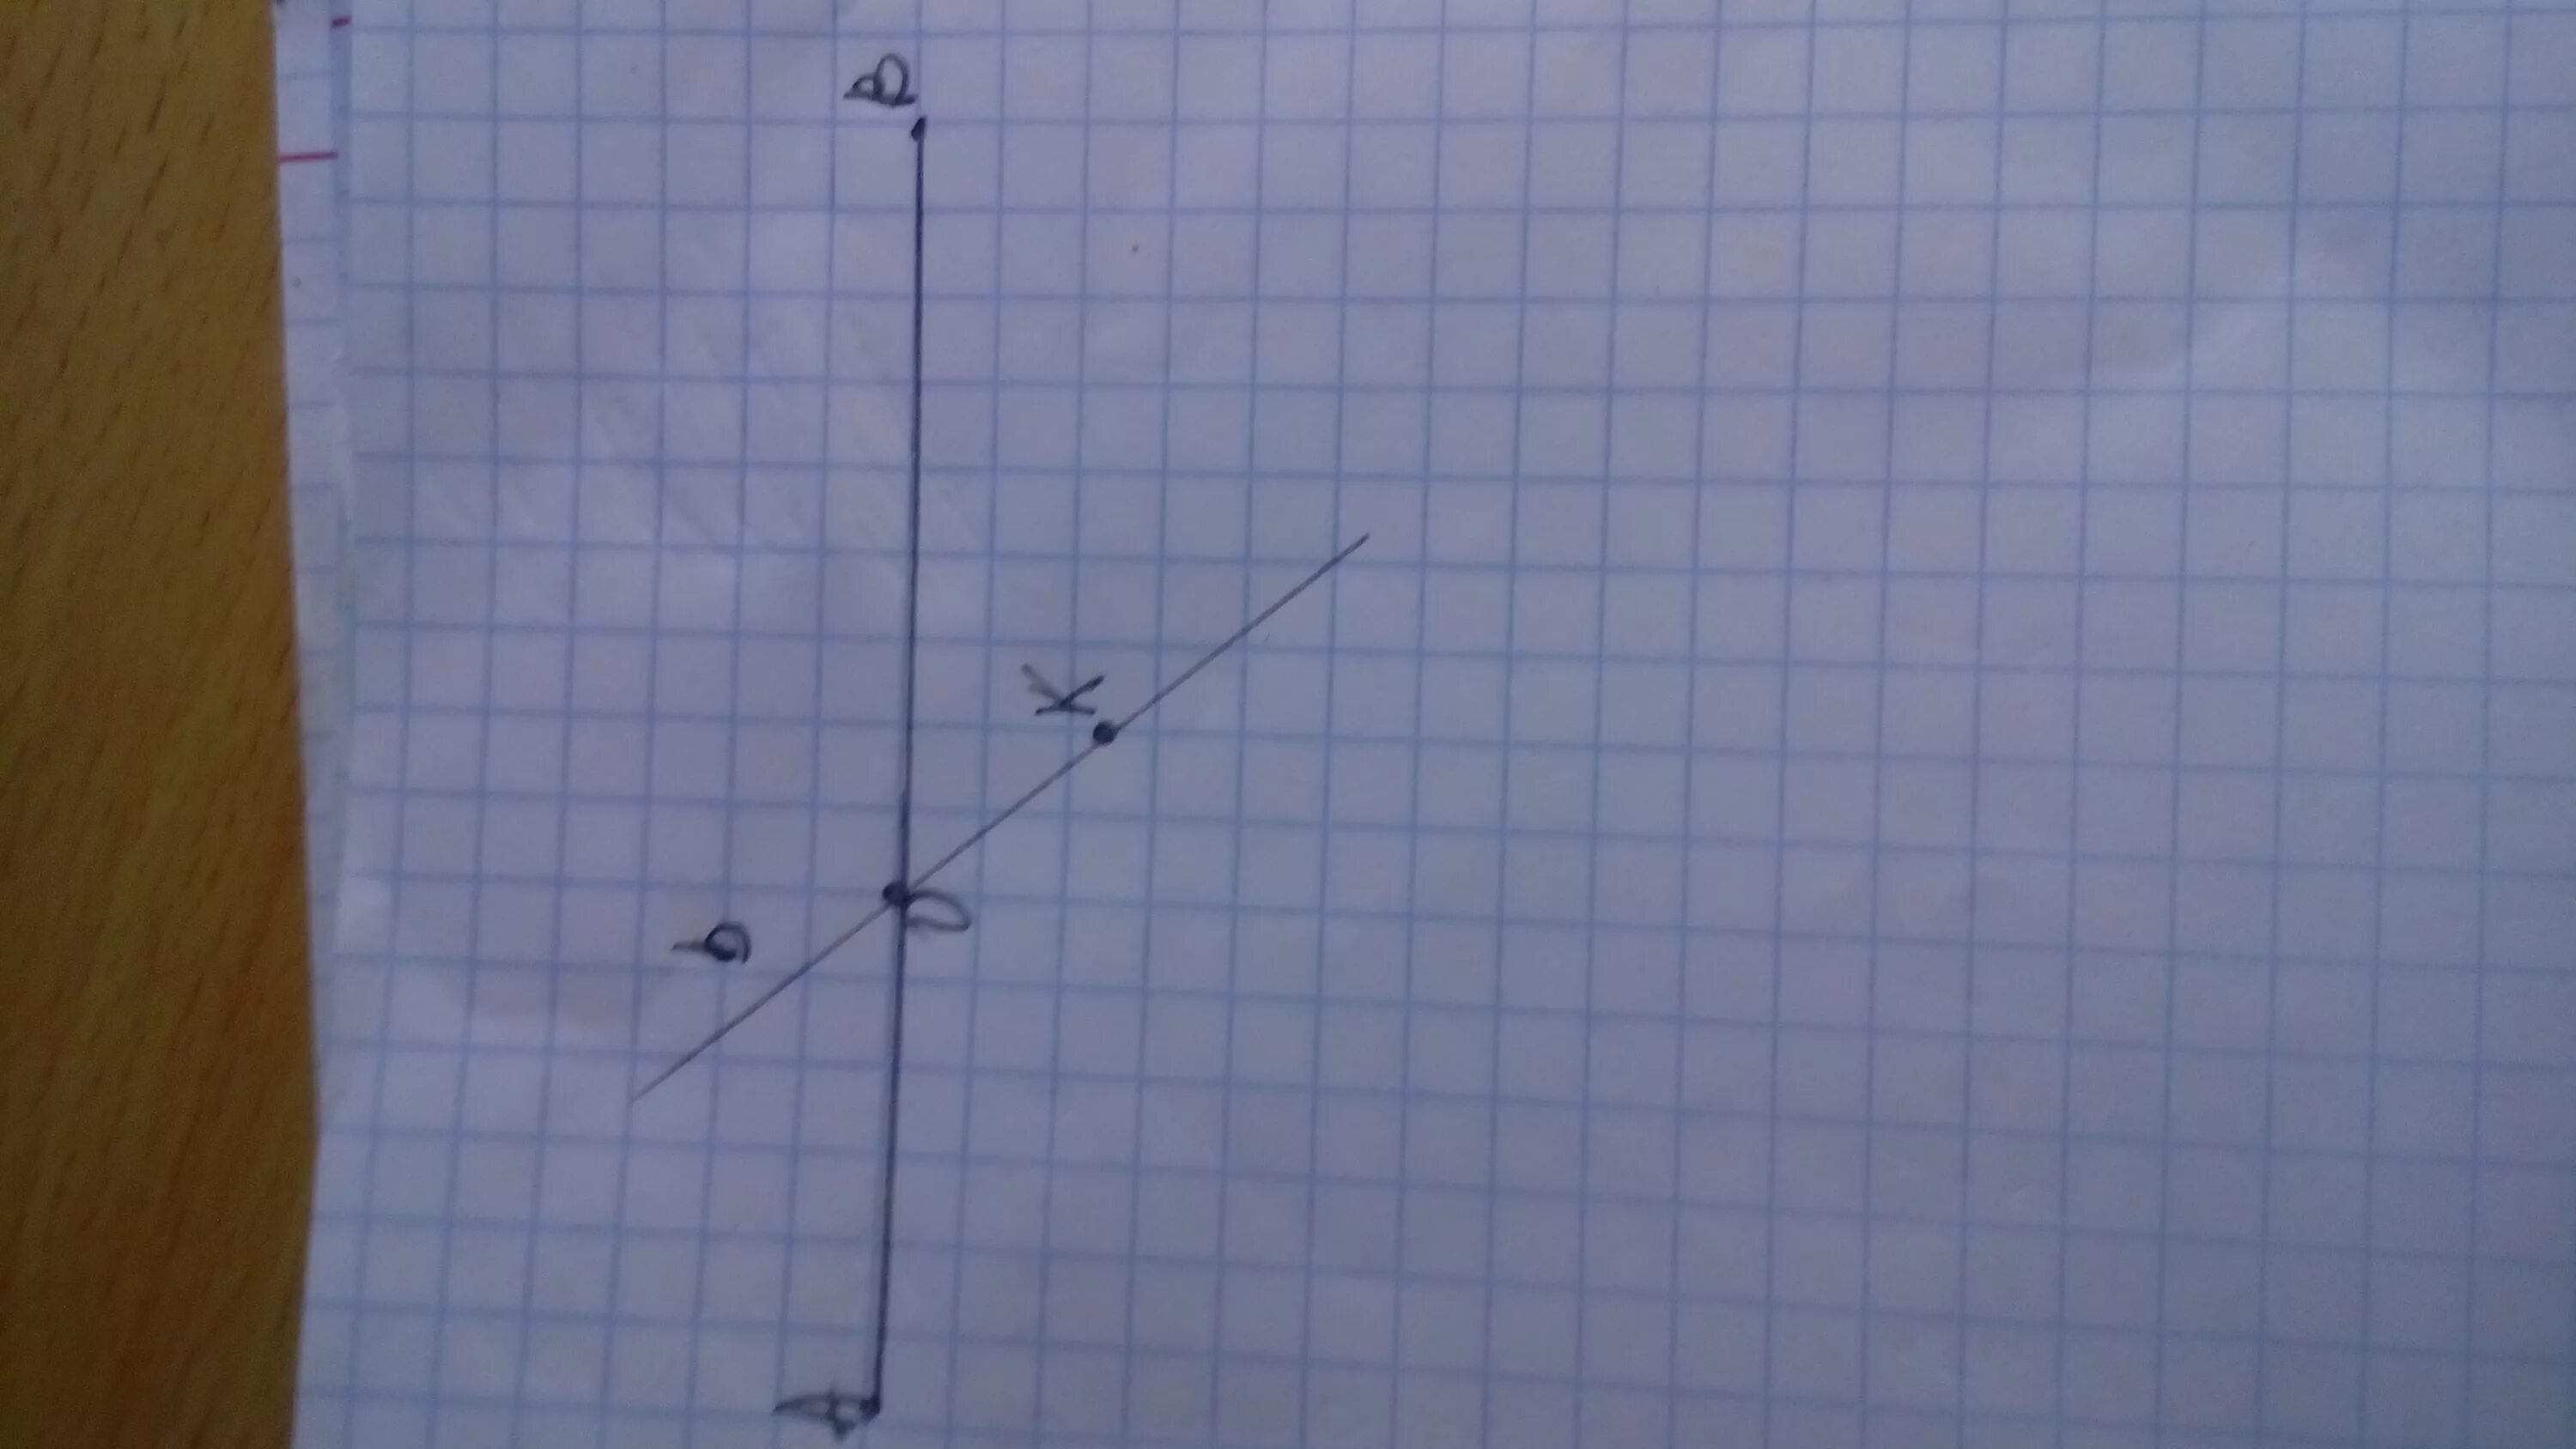 Проведите через точки k и n. Через середину отрезка аб проведена прямая а из точек а и б к прямой а.